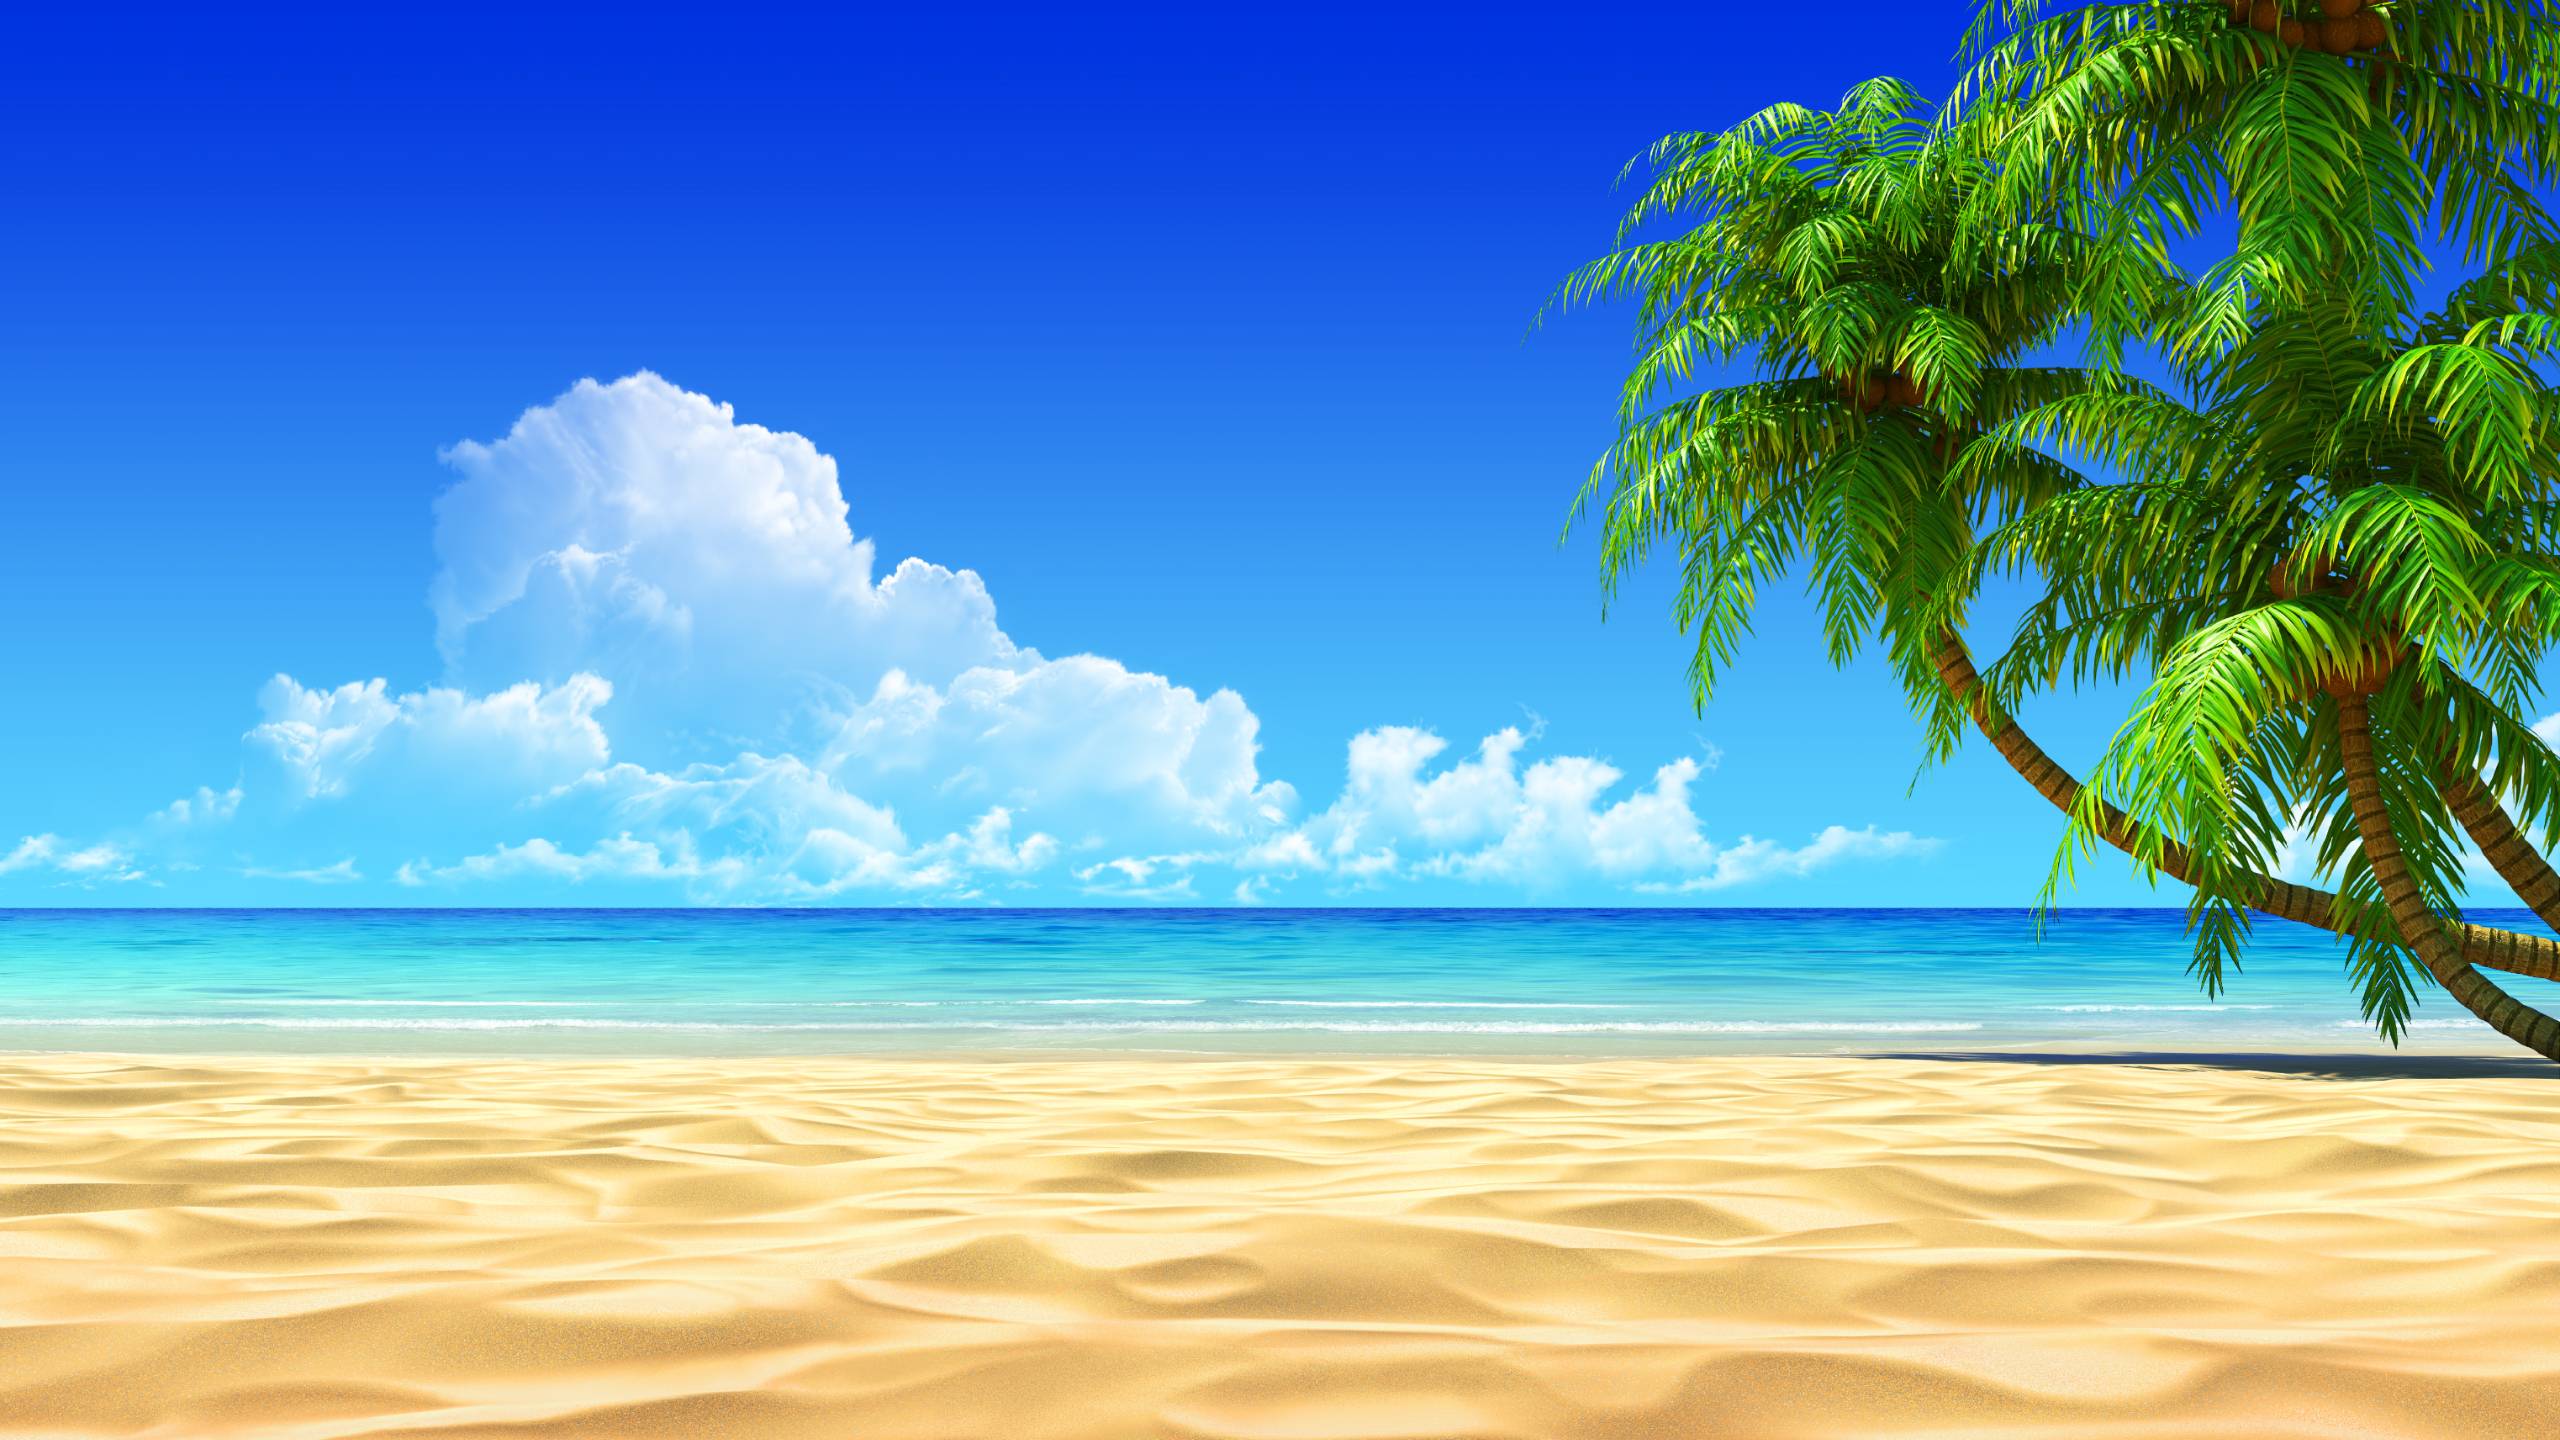 Tropical Beach Paradise (id: 107029)